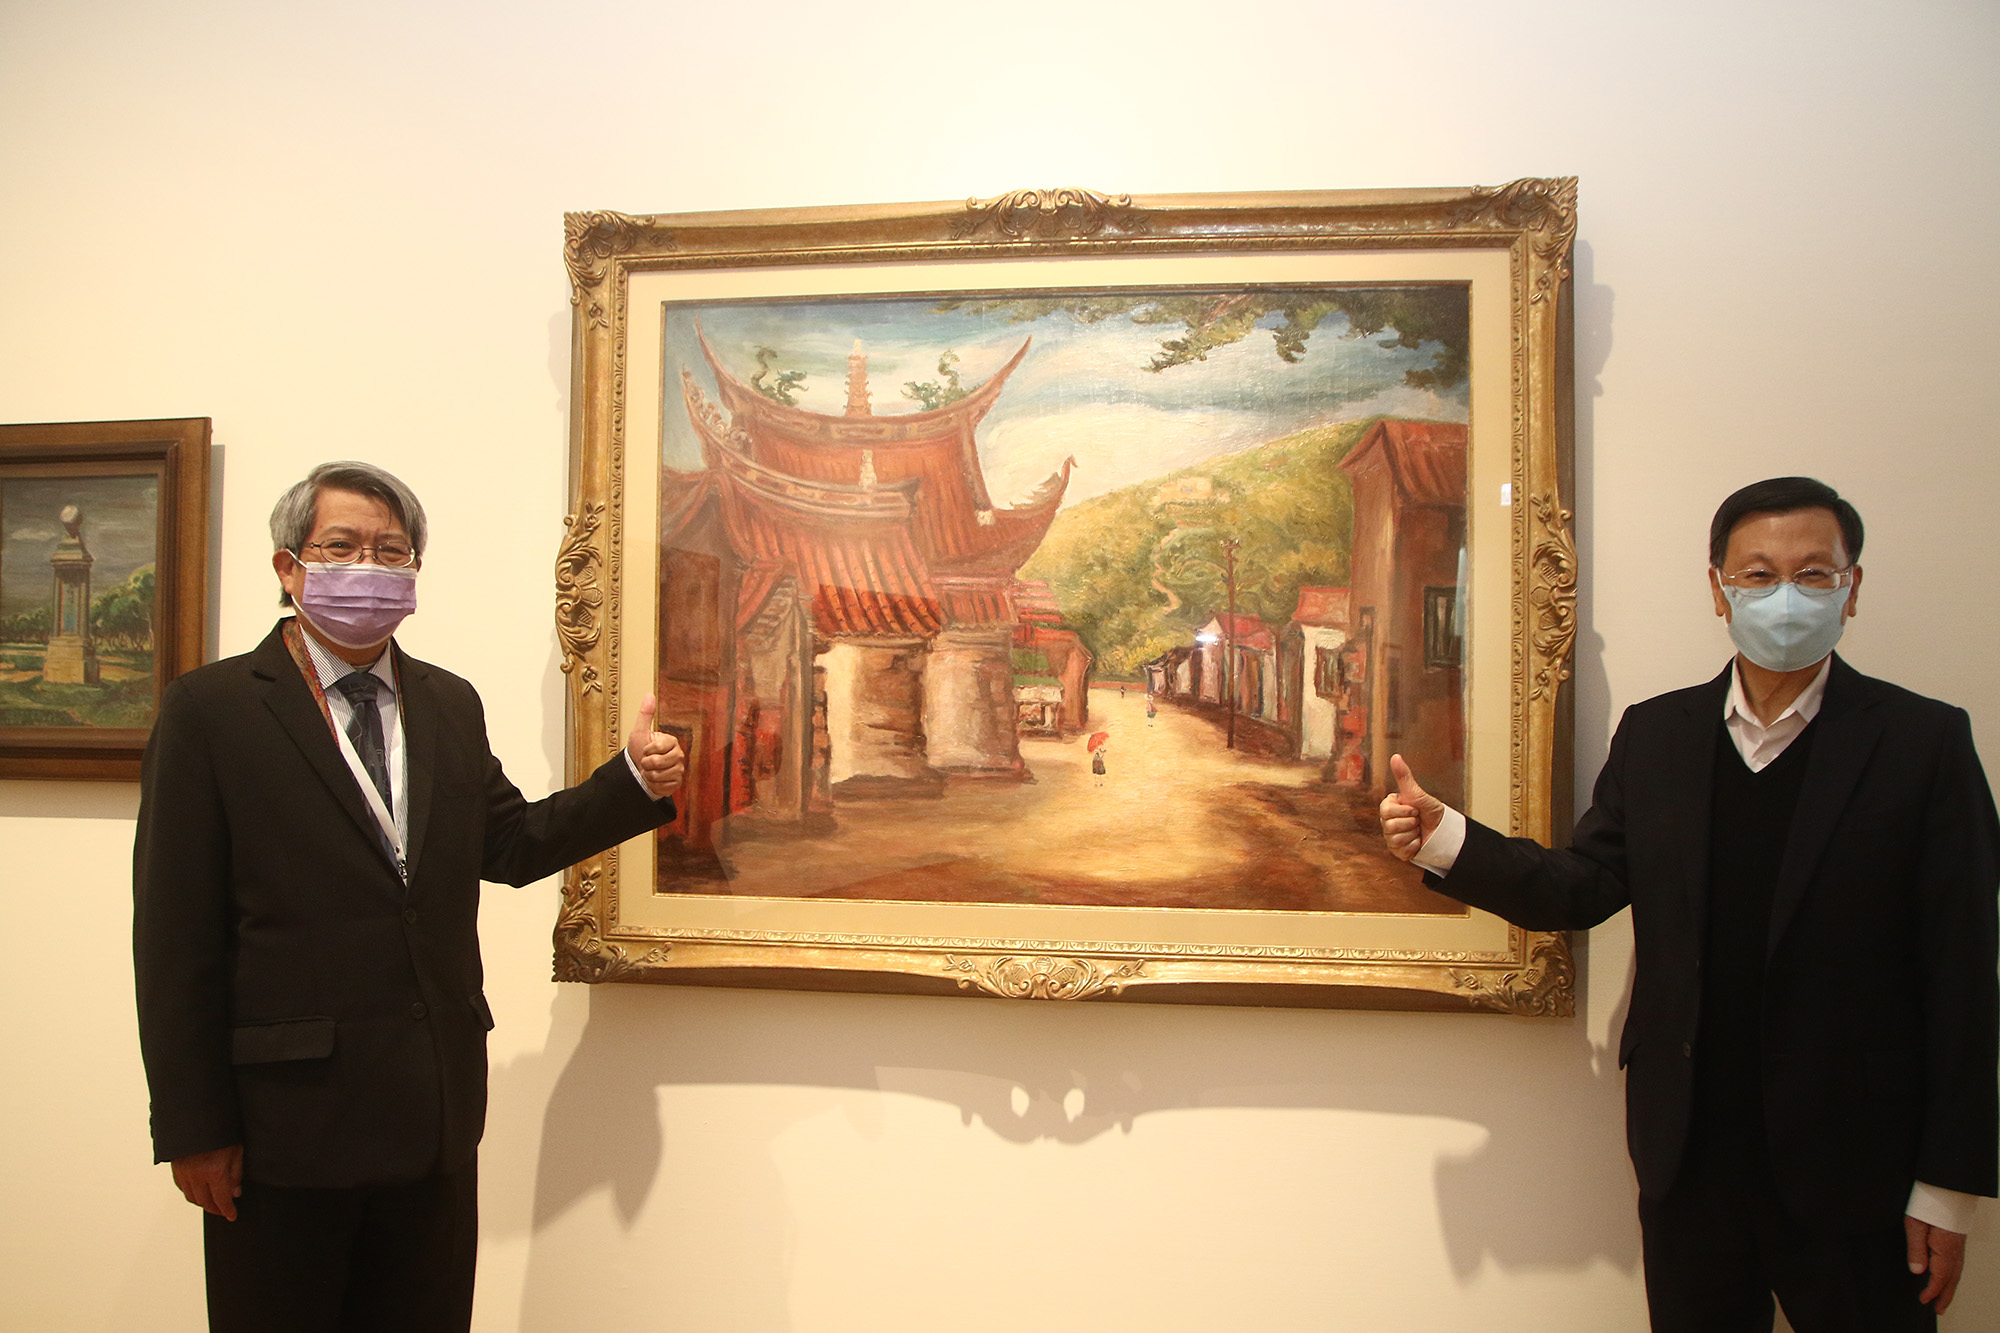 亞大校長蔡進發(右)、亞美館館長潘𥛮(左)，推薦民眾來亞美館參觀前輩畫家陳澄波的作品「古鎮」